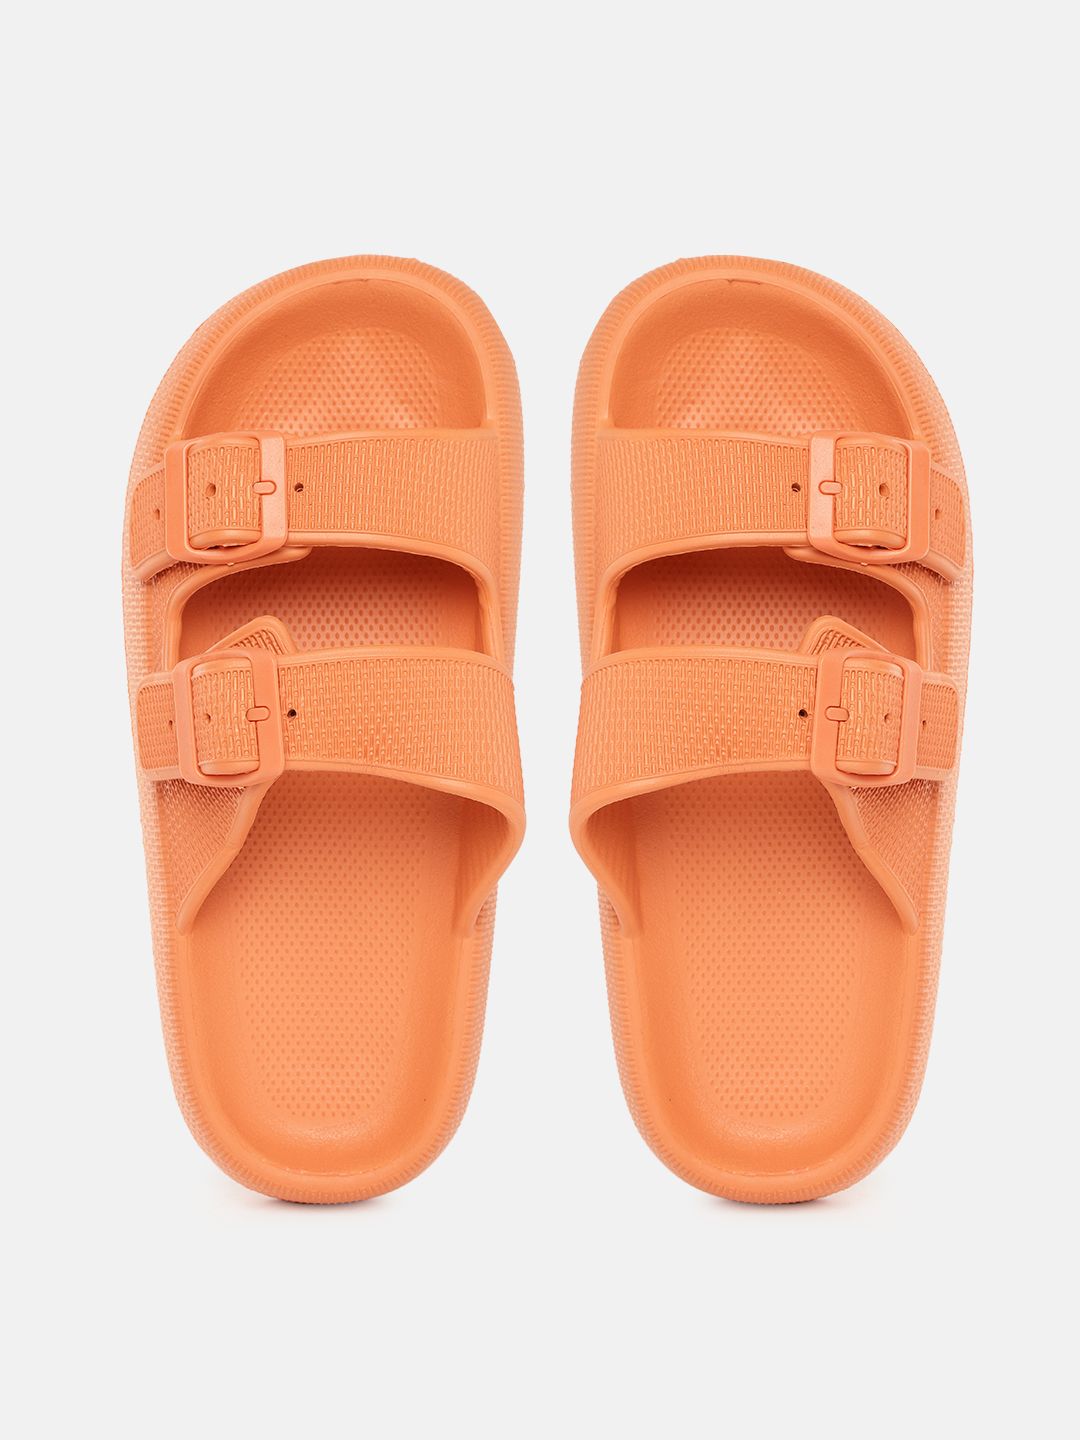 Kook N Keech Women Orange Textured Slip-Ons with Buckle Detail Price in India